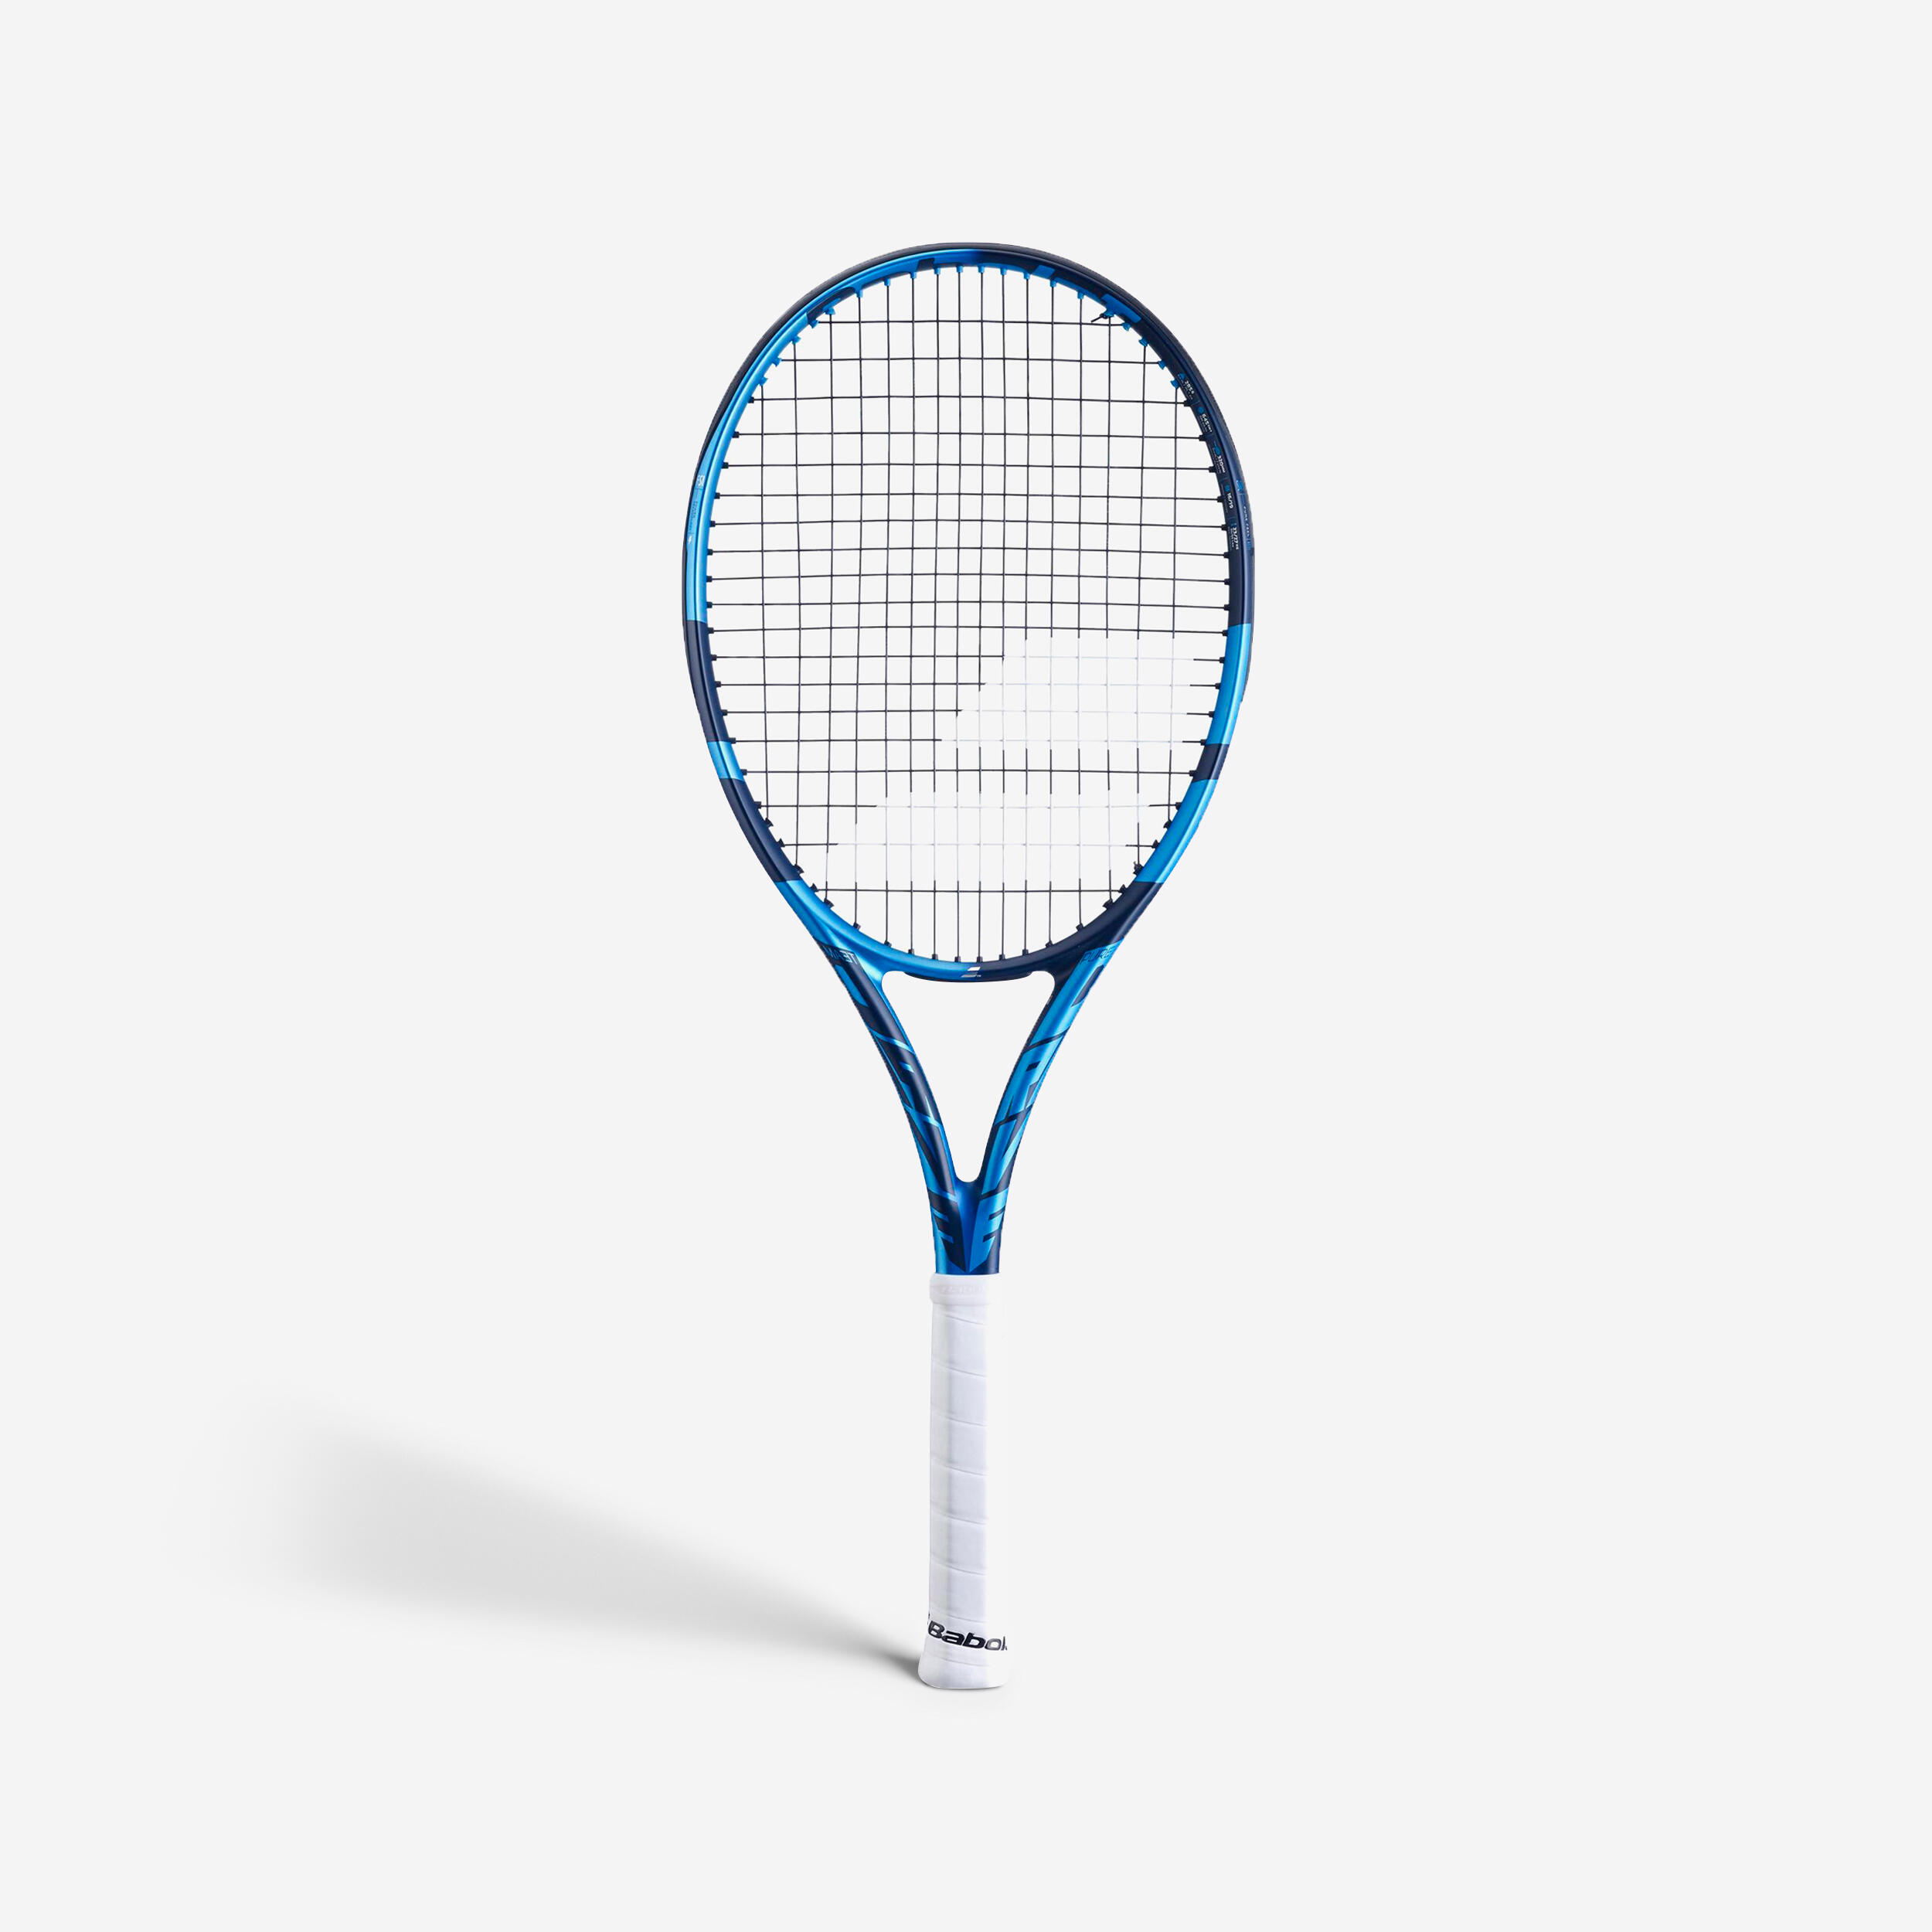 Babolat Tennis Racket & Balls | Decathlon